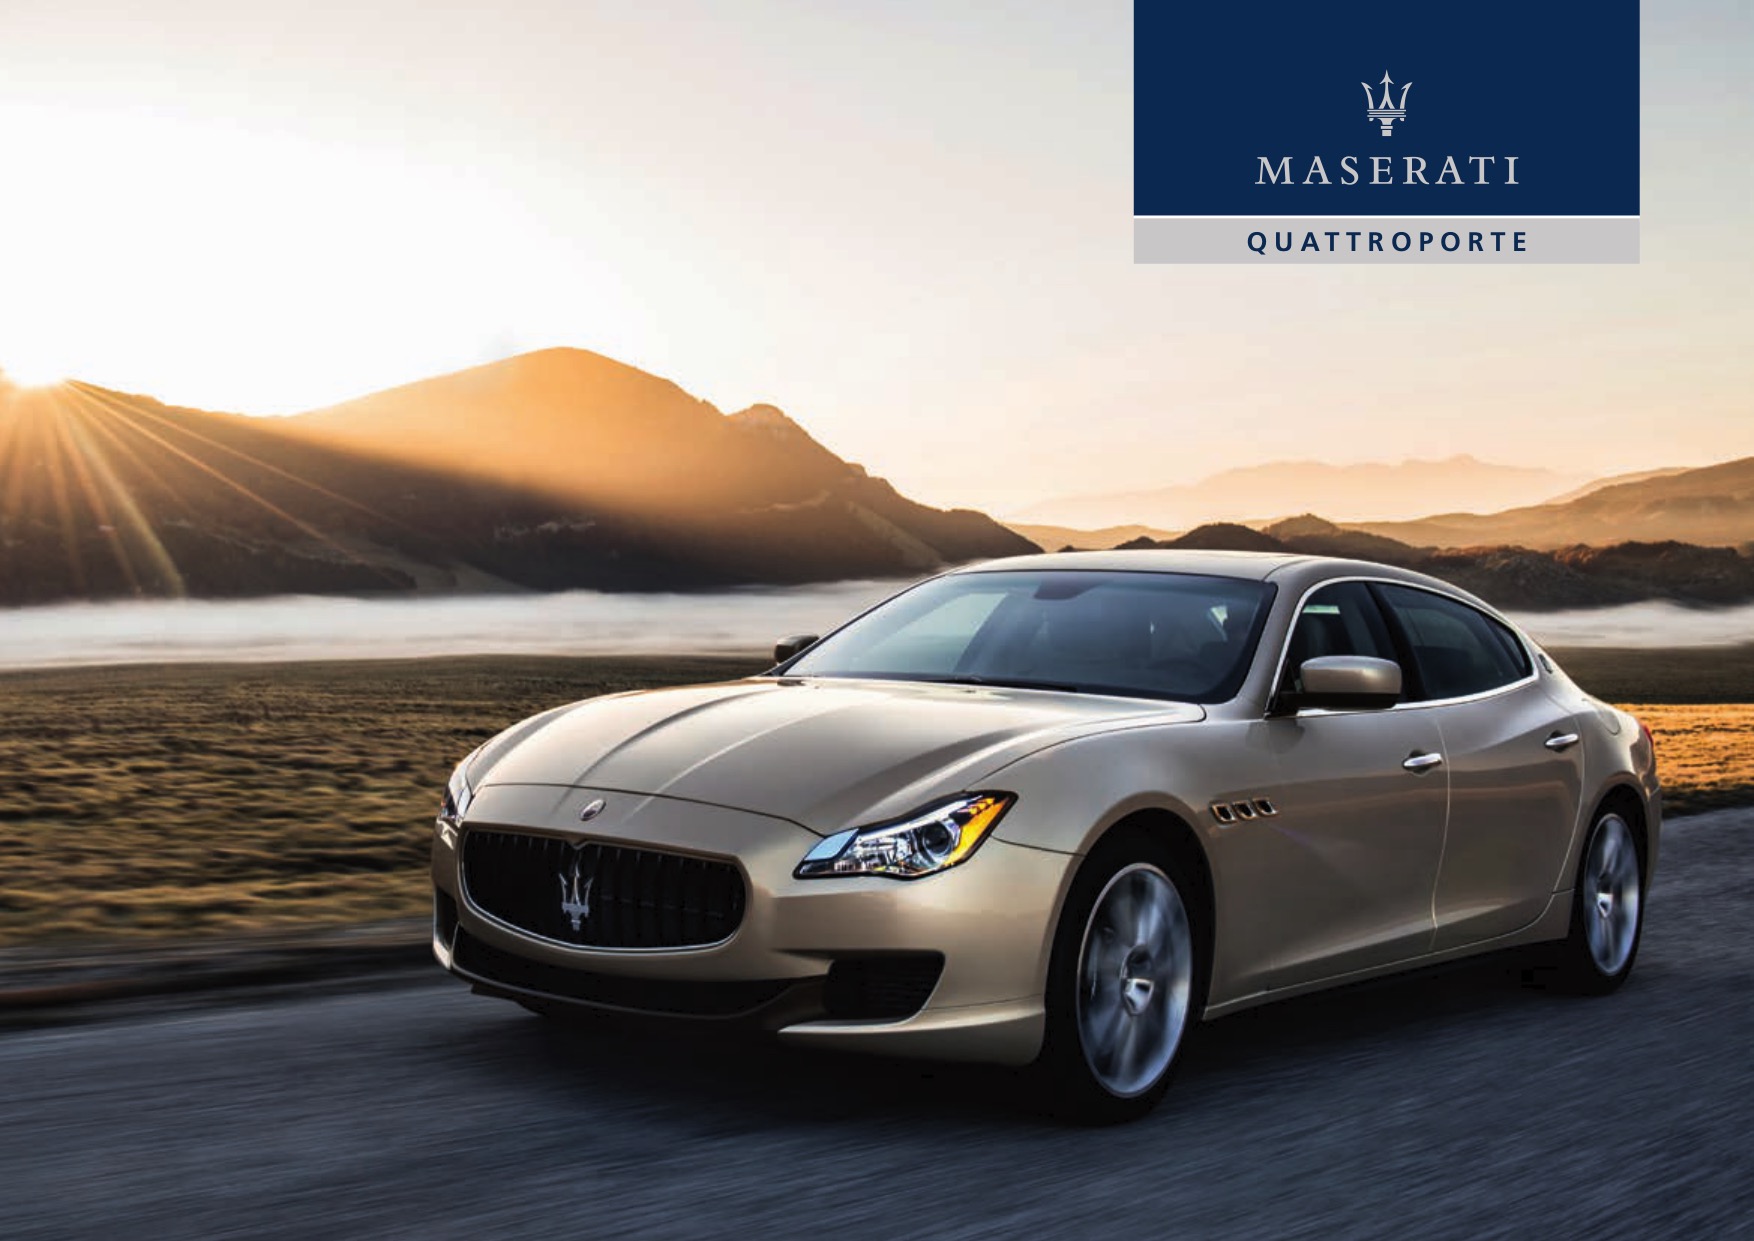 2015 Maserati Quattroporte Brochure